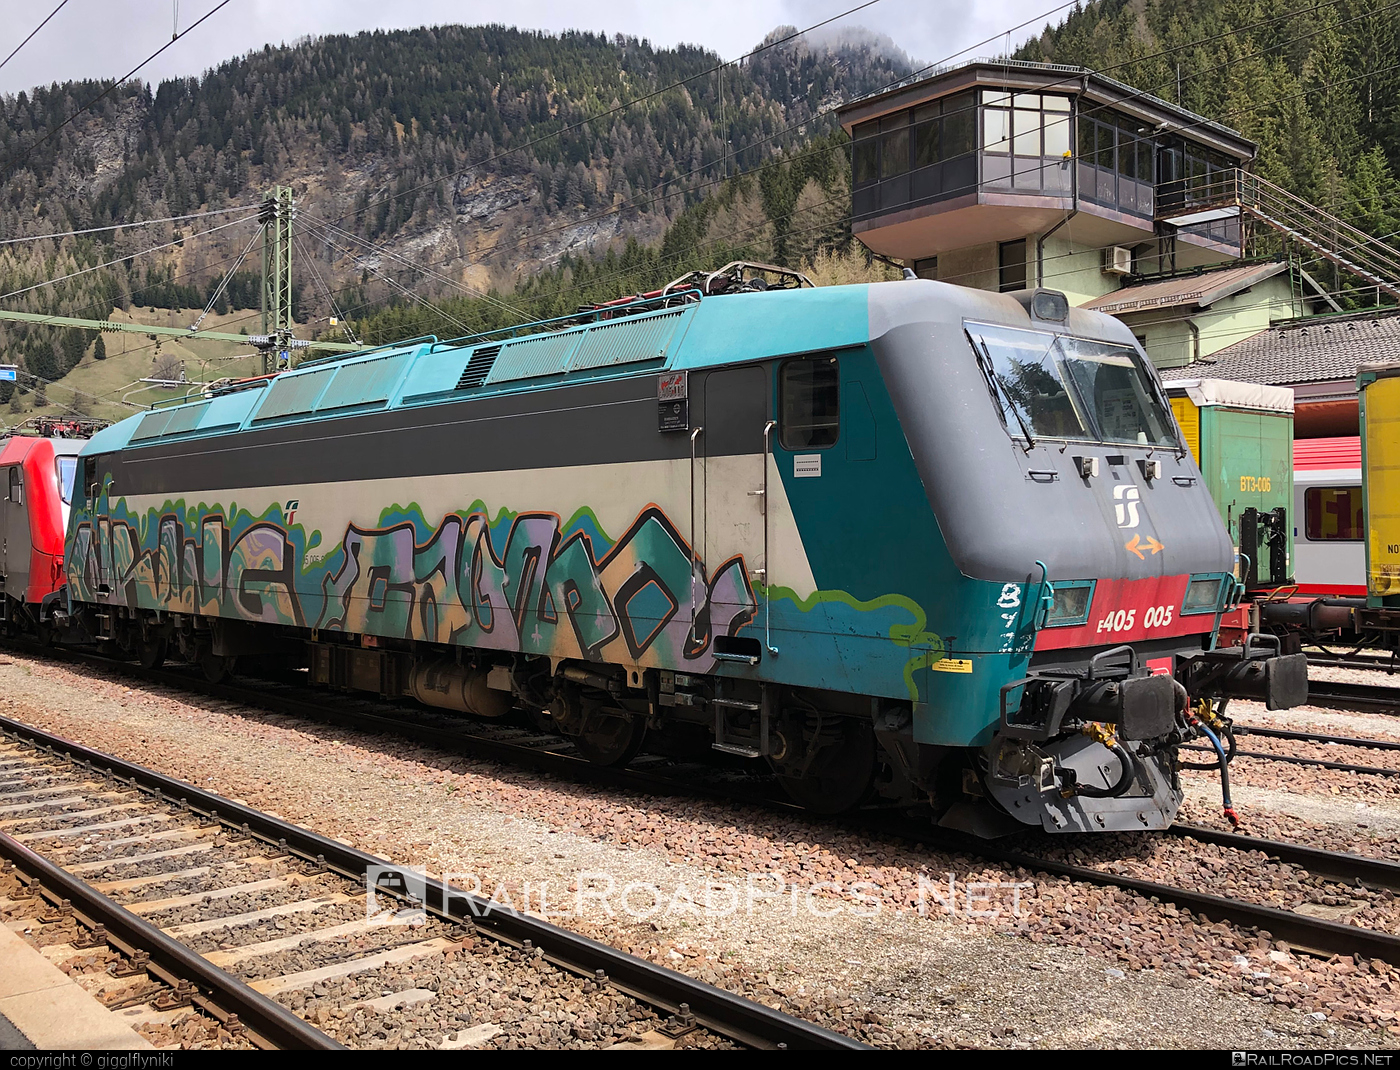 Bombardier Class E.405 - E405.005 operated by Mercitalia Rail S.r.l. #bombardier #bombardierE405 #ferroviedellostato #fs #fsClassE405 #fsitaliane #graffiti #mercitalia